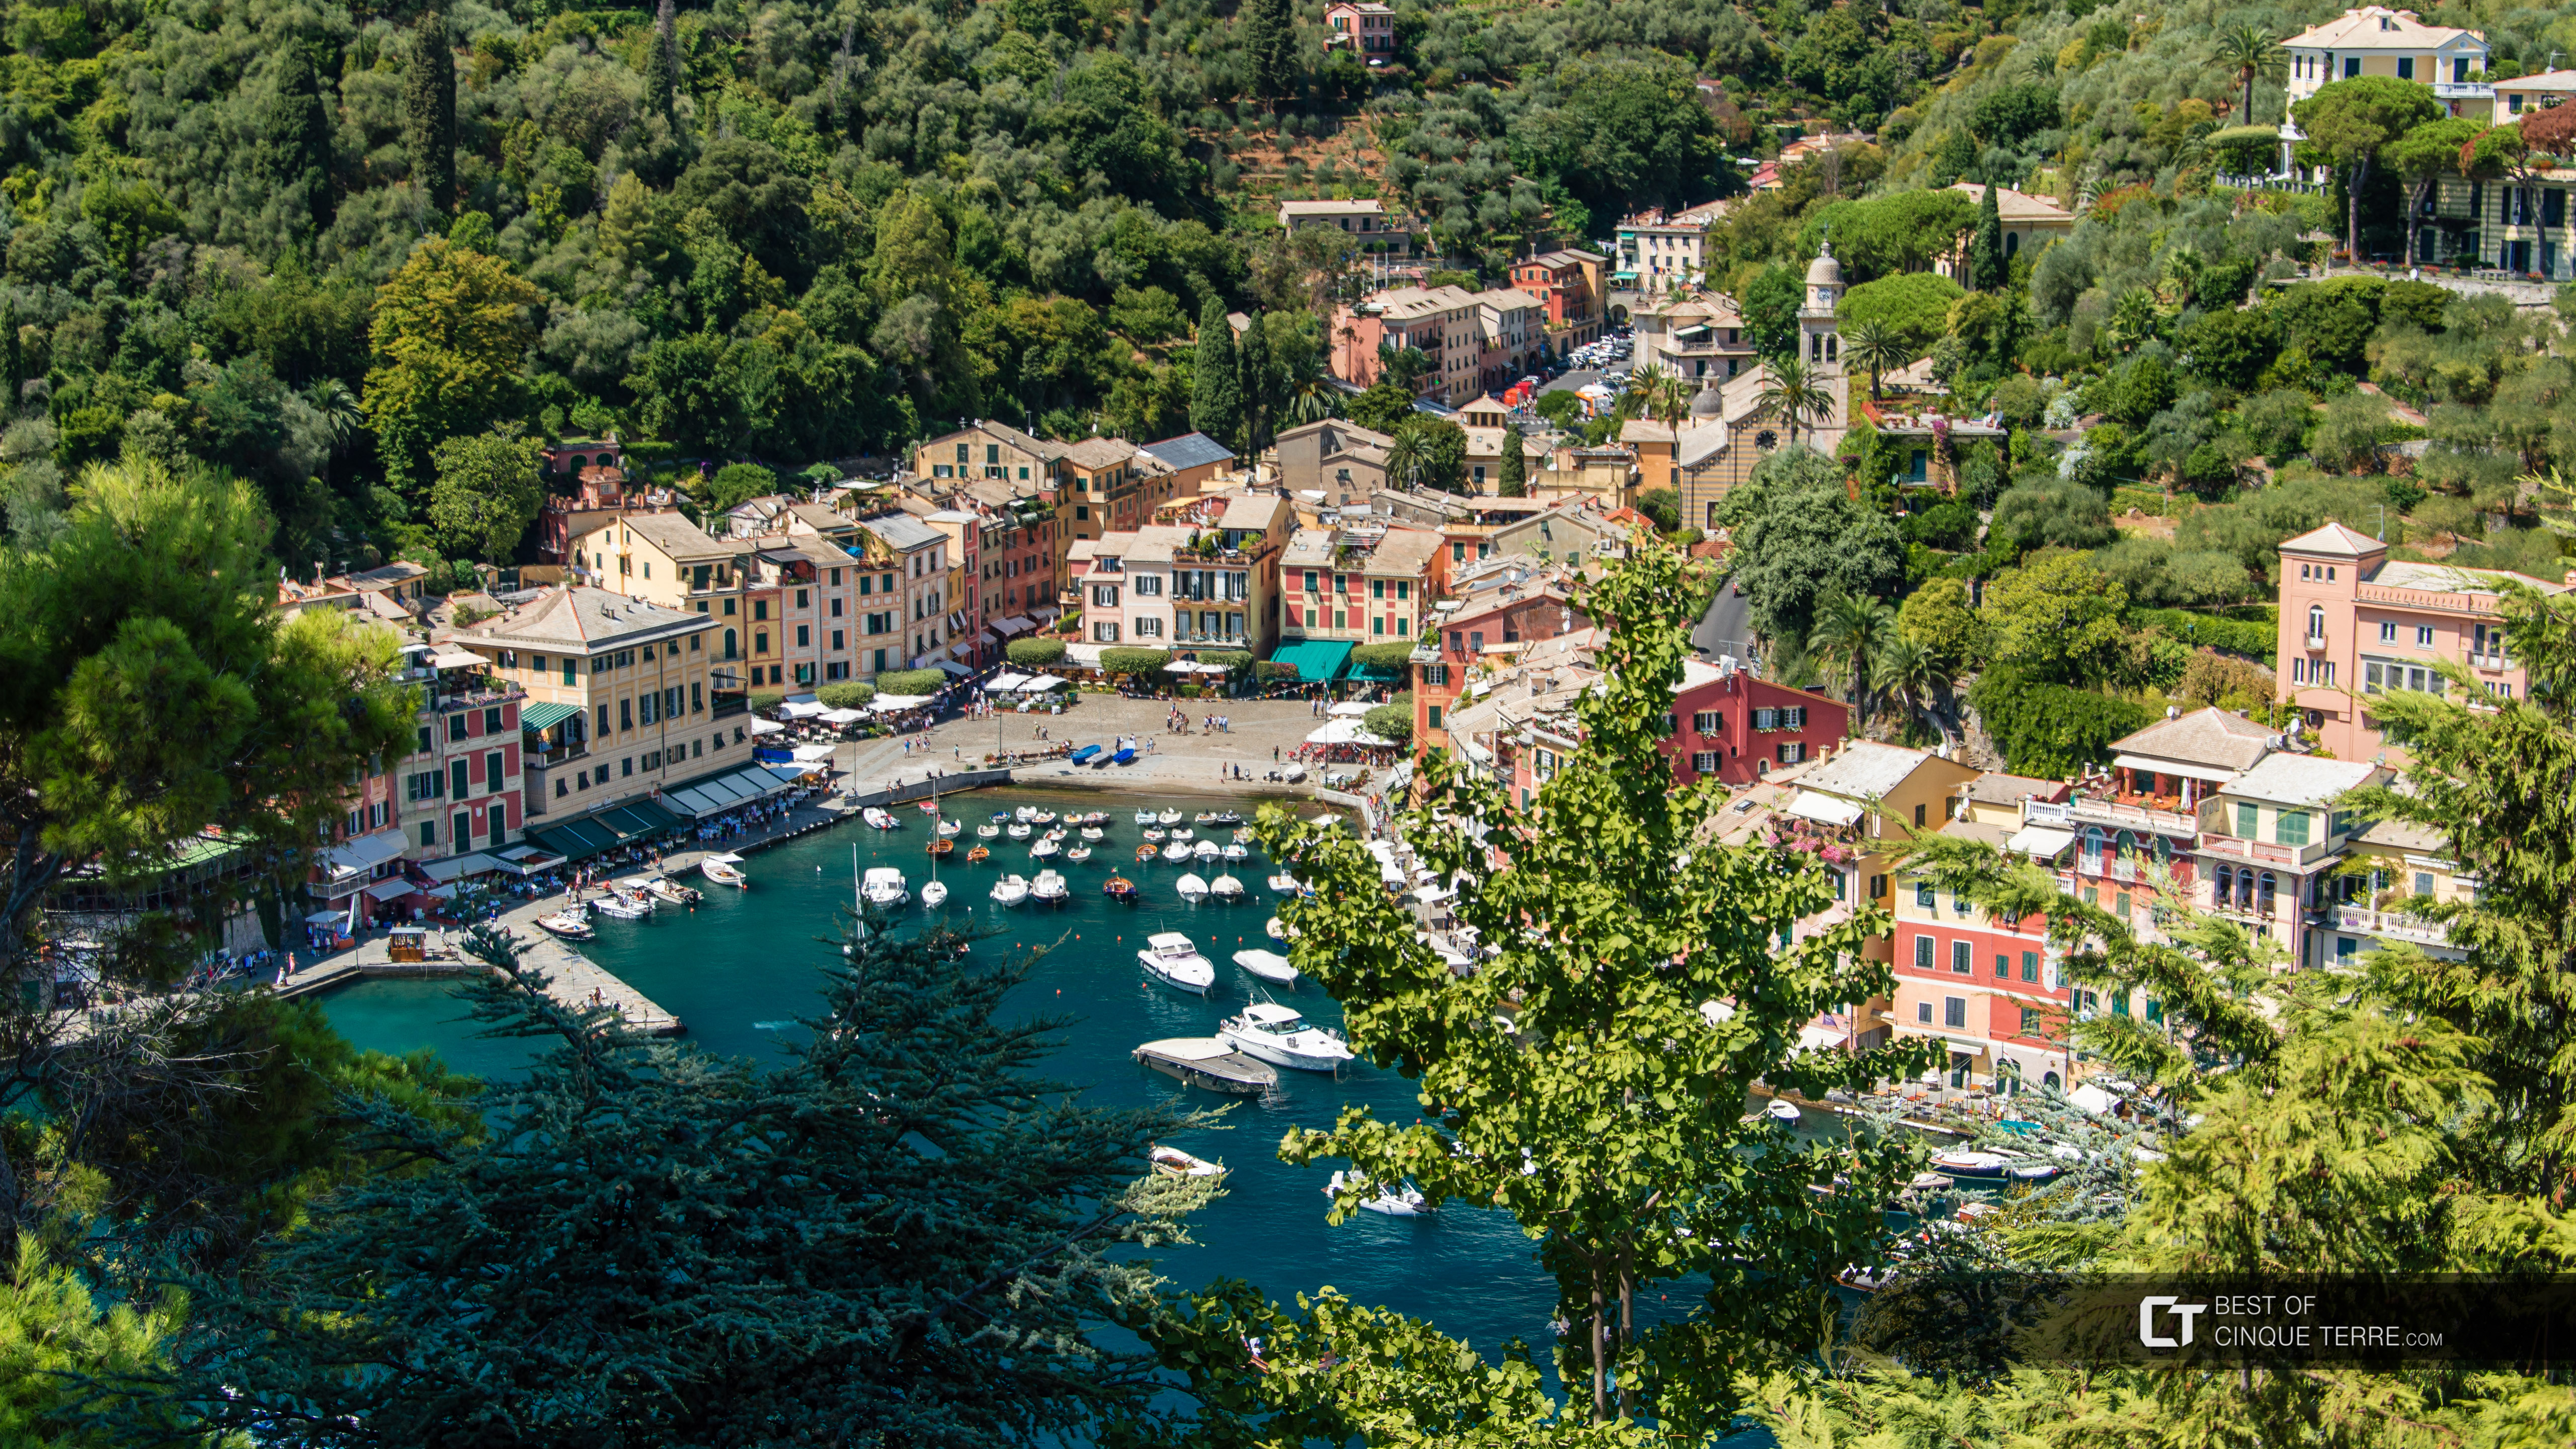 Ansicht der Bucht vom Schloss Brown, Portofino, Italien